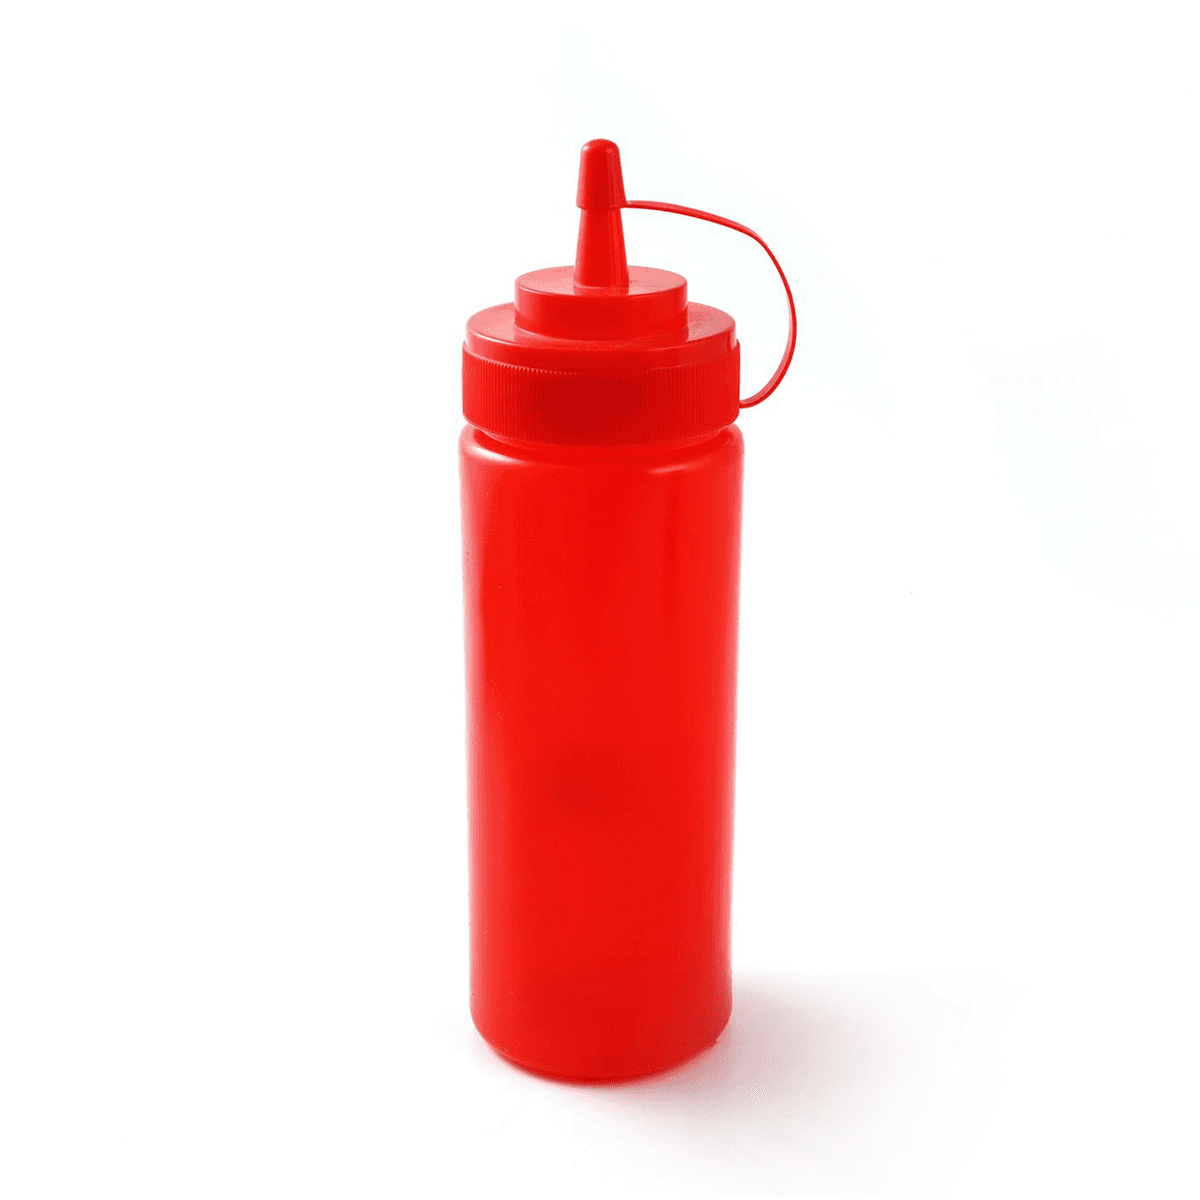 سكويزر 350 مل مع غطاء بلاستيك أحمر Plastic 350 ml Squeezer Red Red